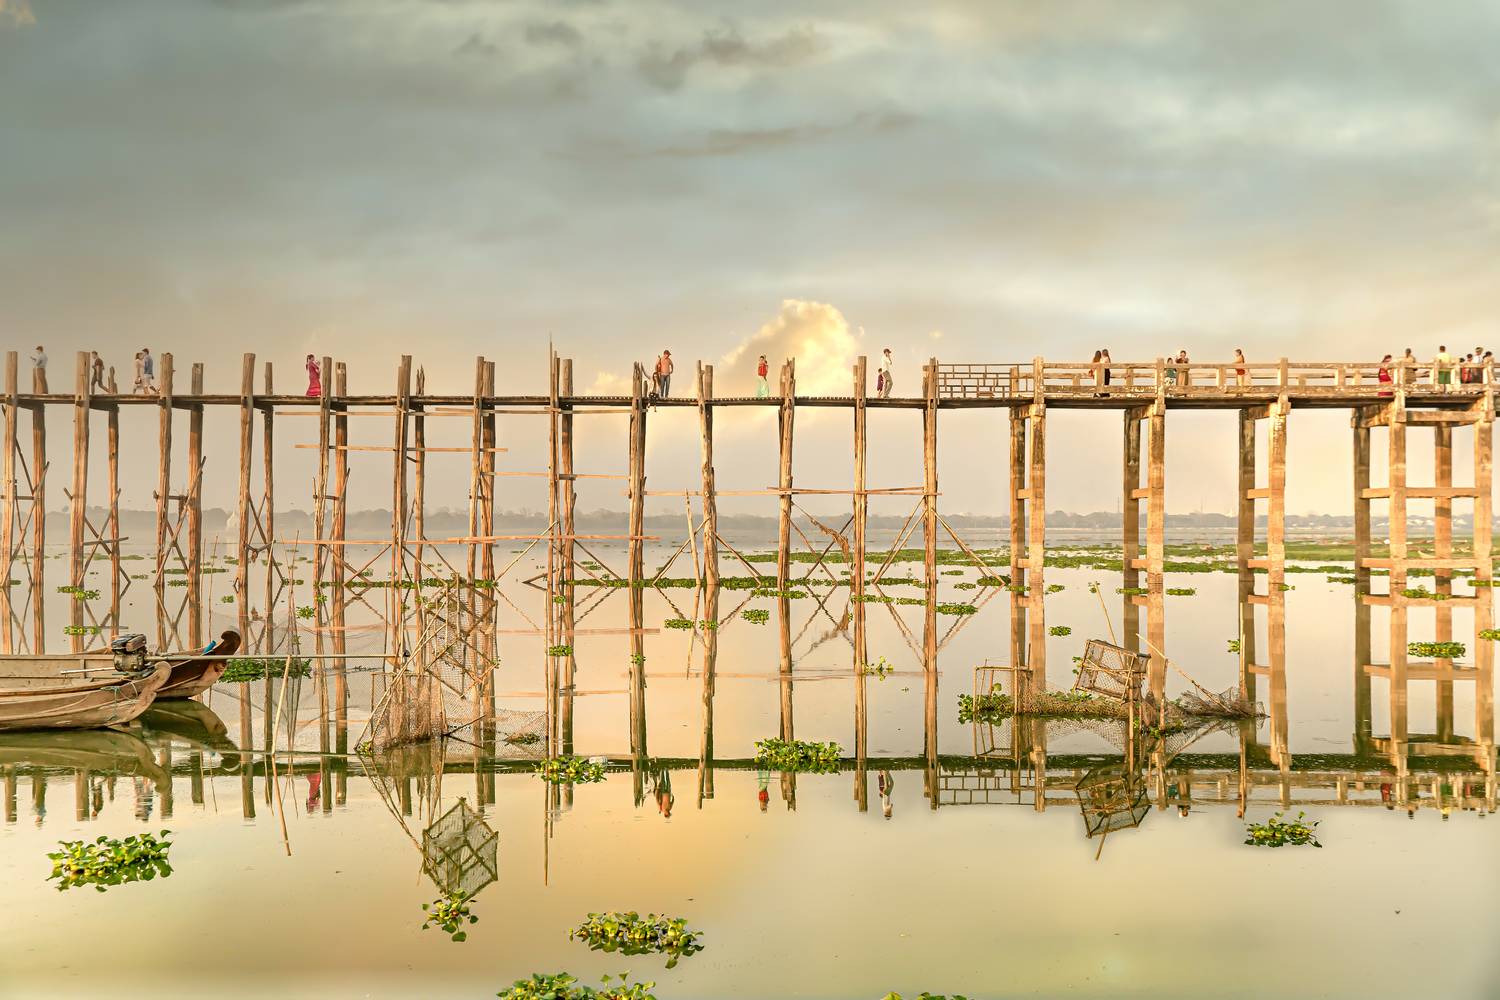 U Bein Bridge in Mandalay from Miro May